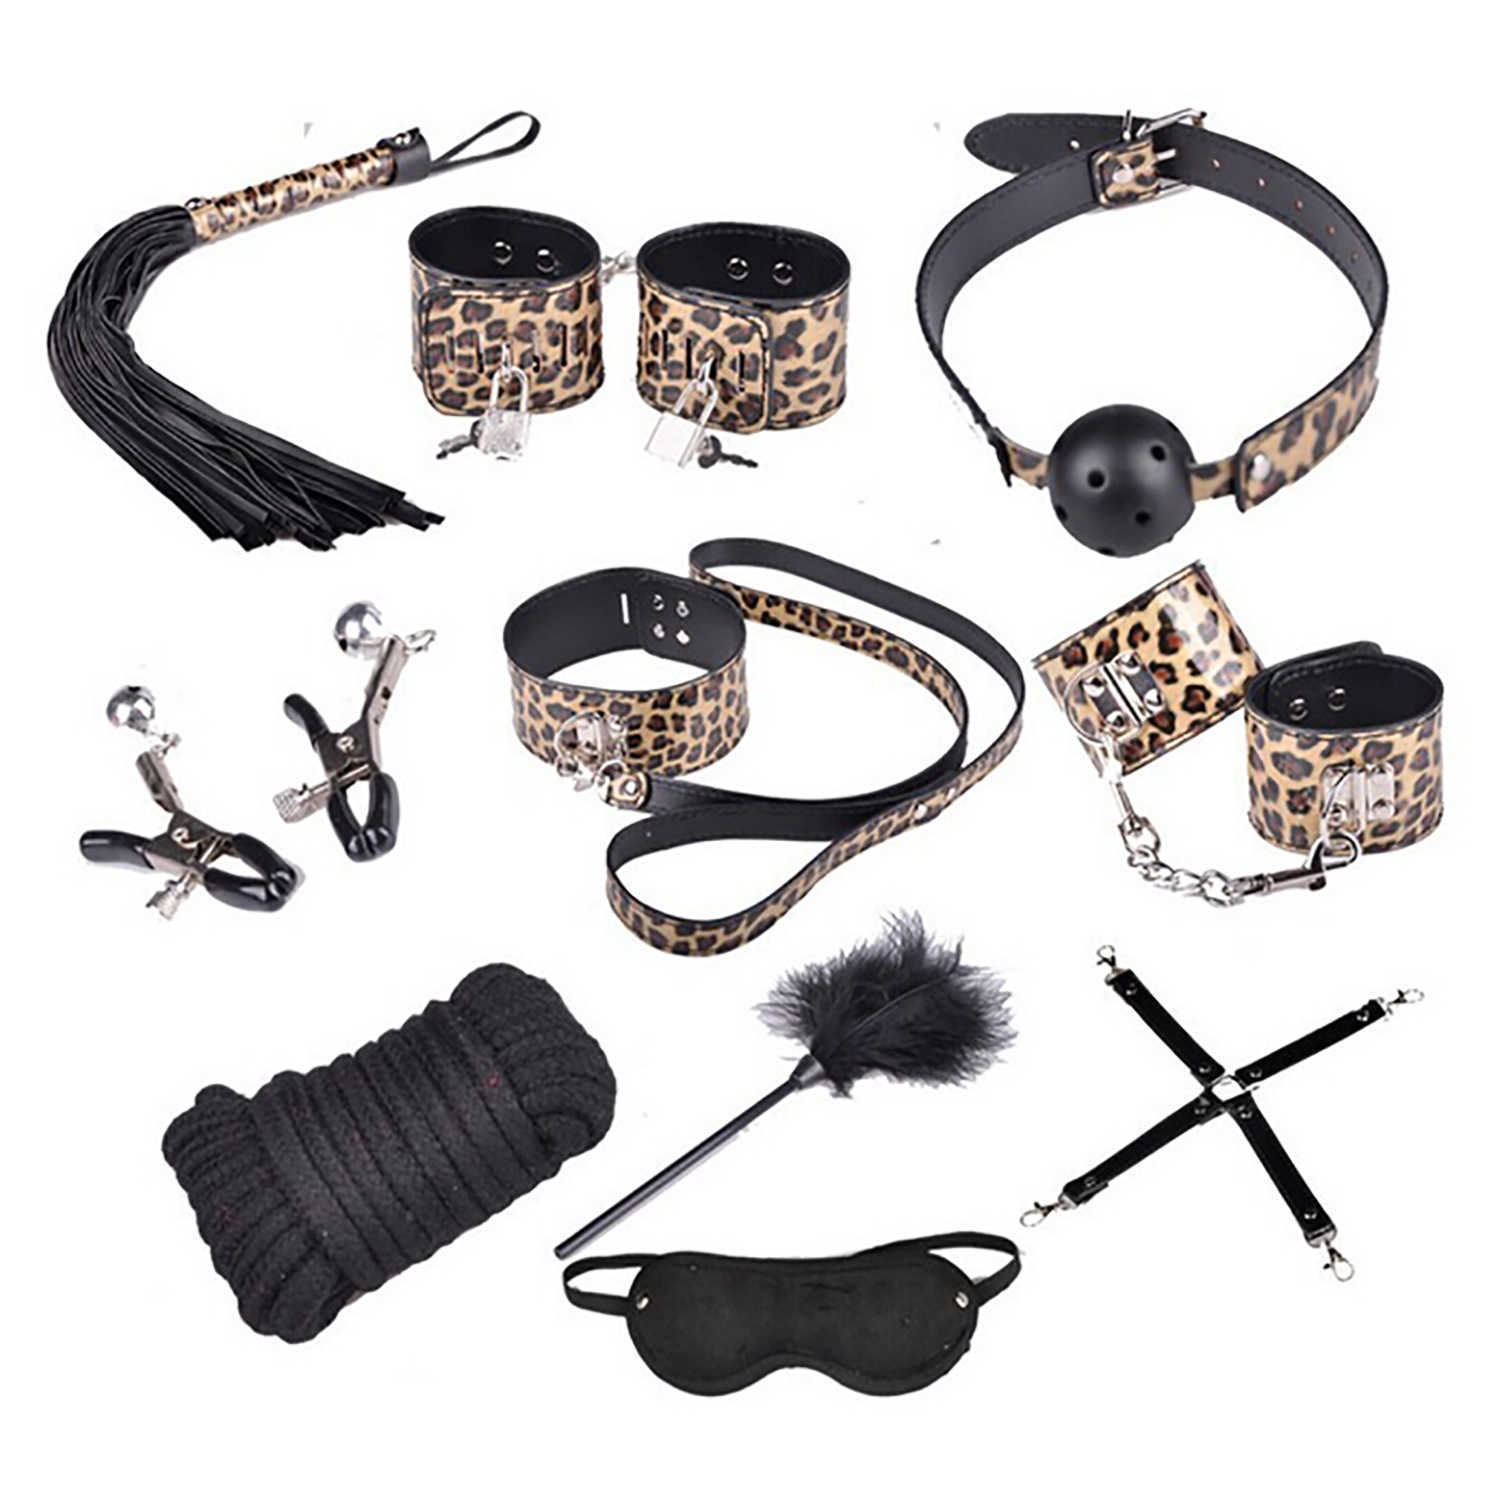 Itens de beleza Jogos sensuais Leopard Leather Bondage Sets Erotic BDSM Restraints Training Slave Tools Fetichism Couples SM Game Toys